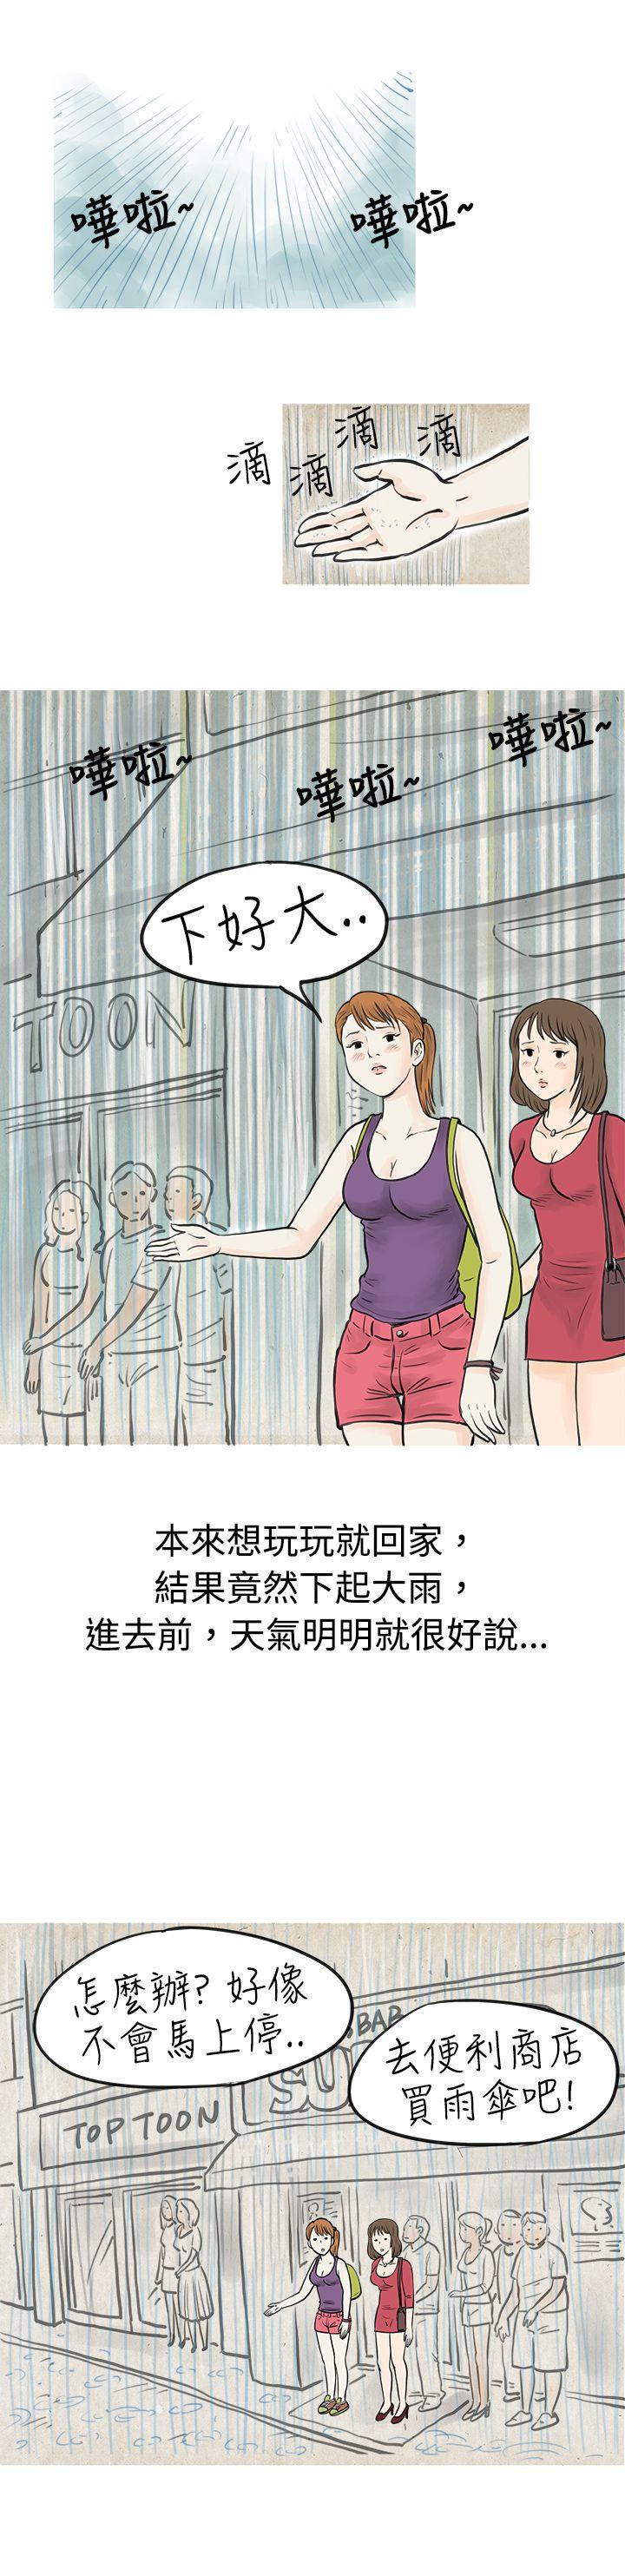 韩国污漫画 秘密Story 在弘大夜店的豔遇故事(上) 5